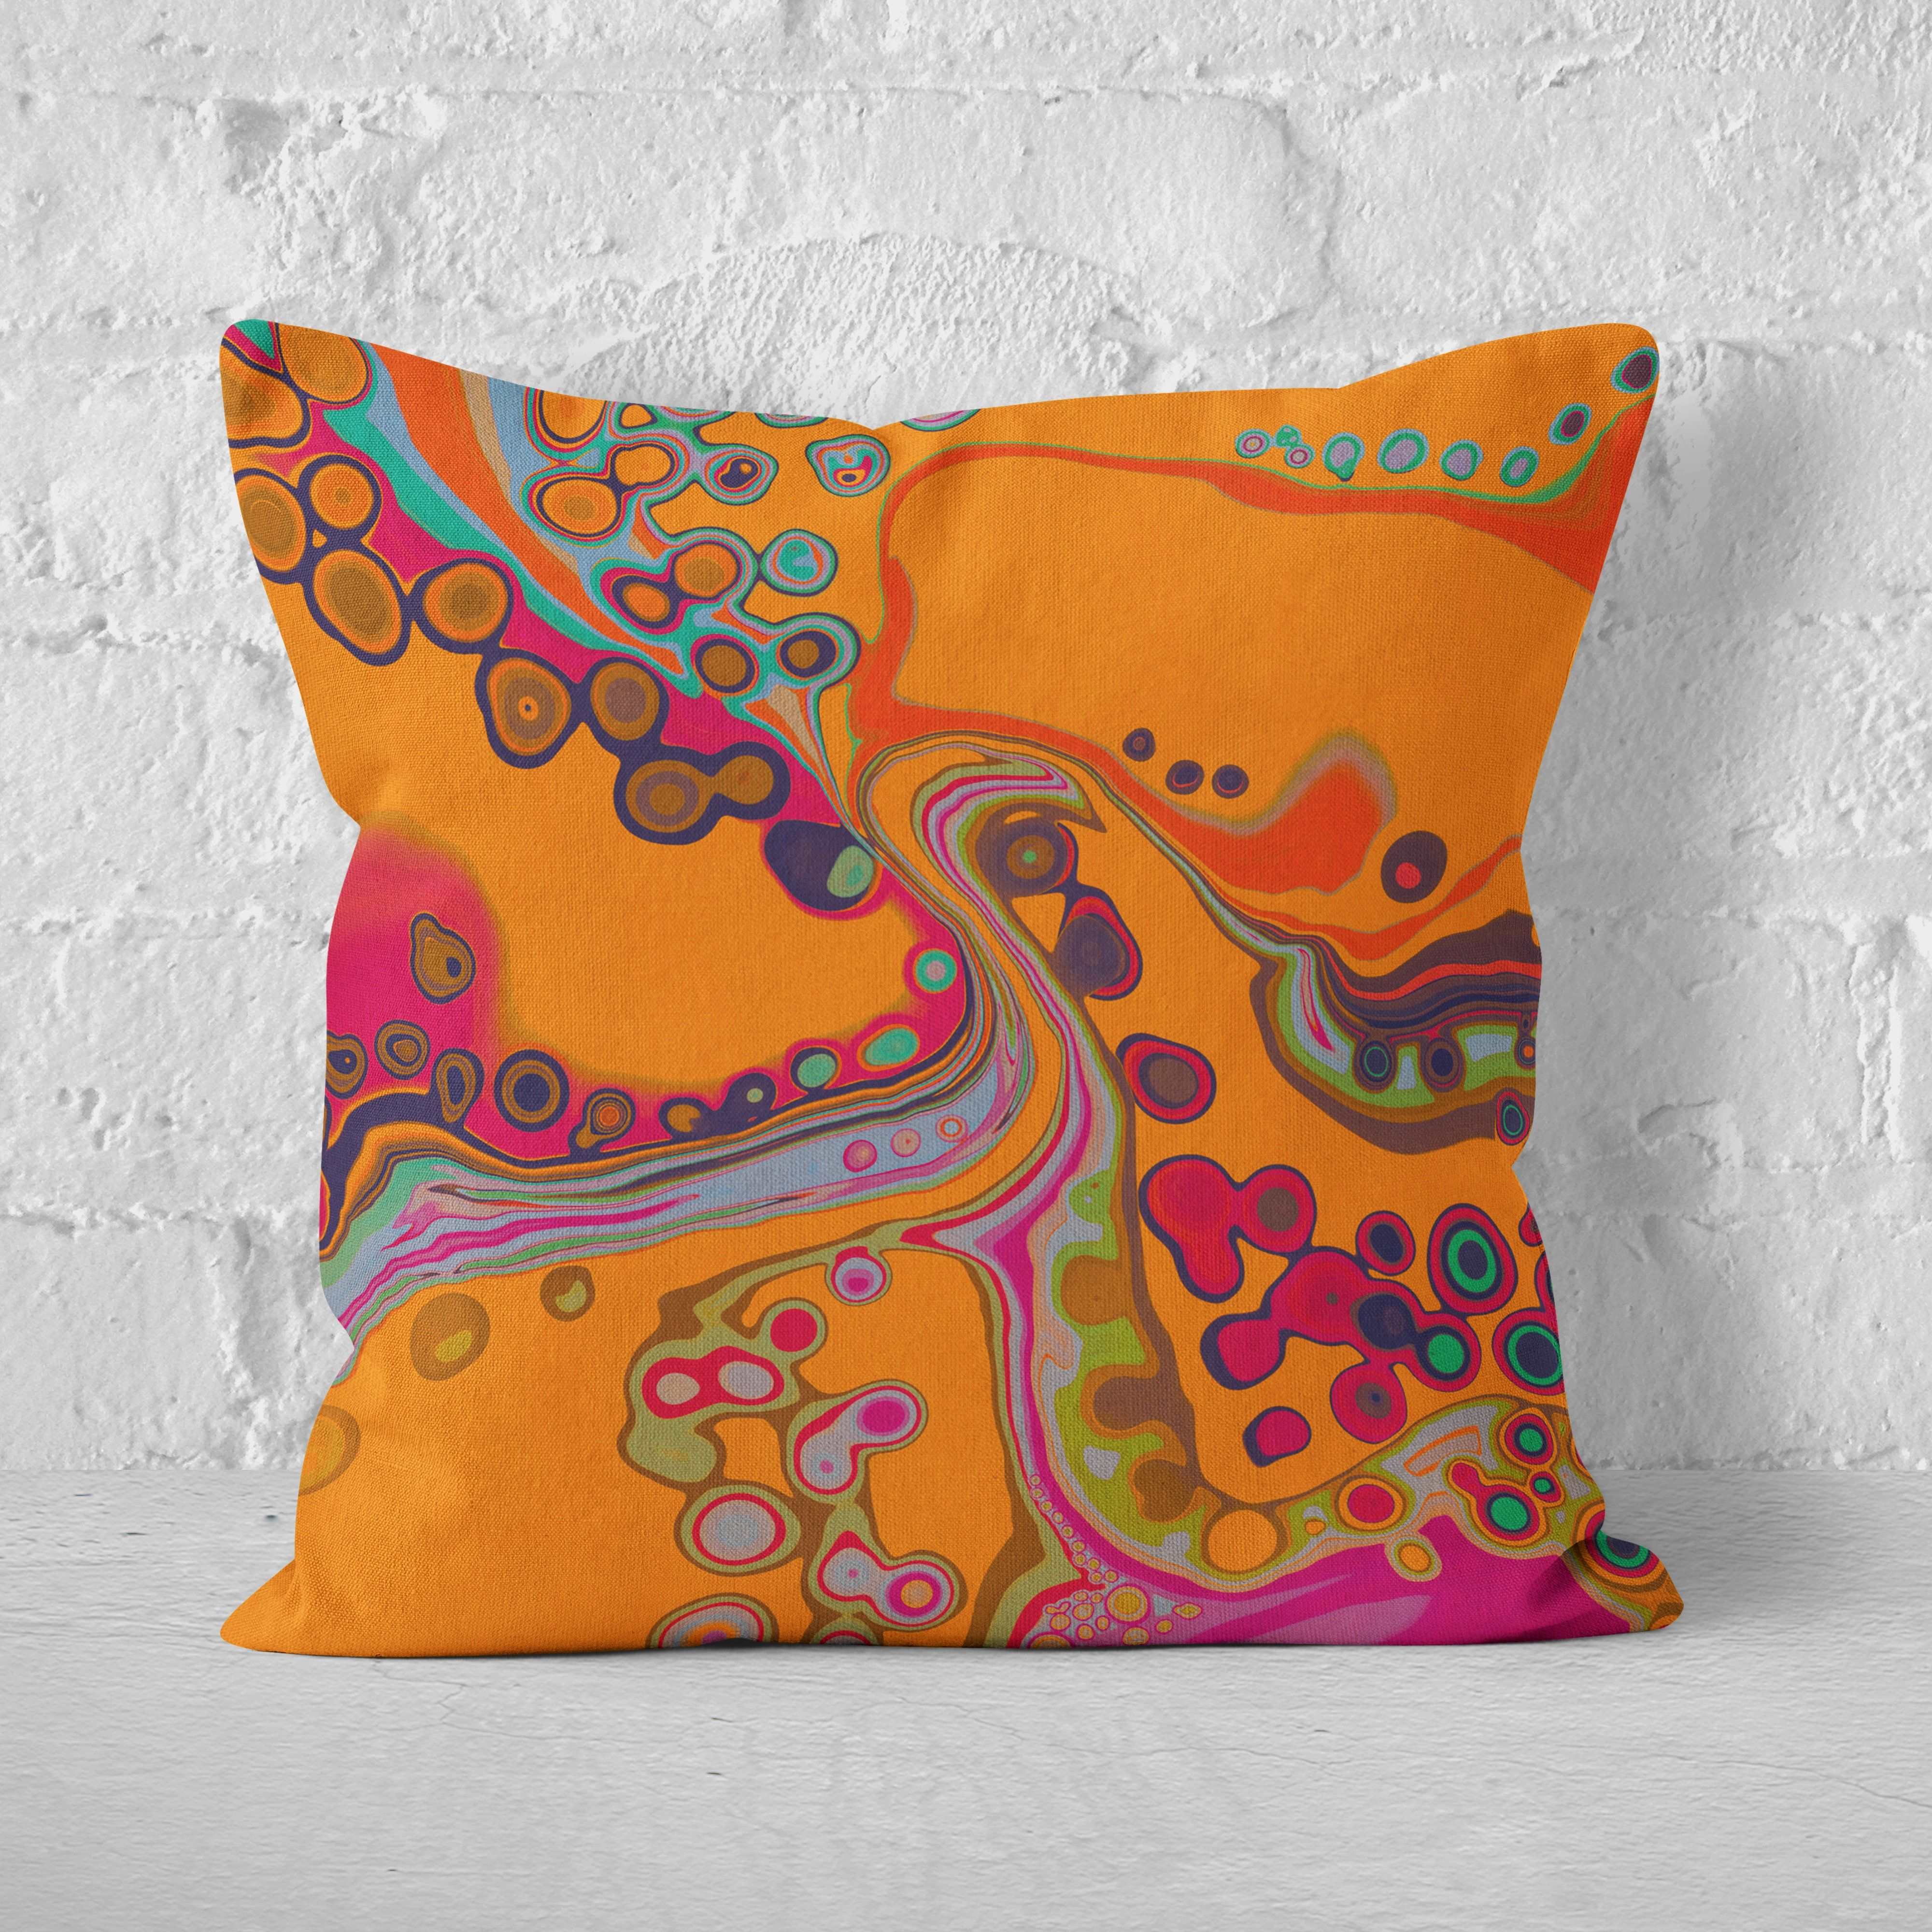 Octopus's Garden Abstract Cushion